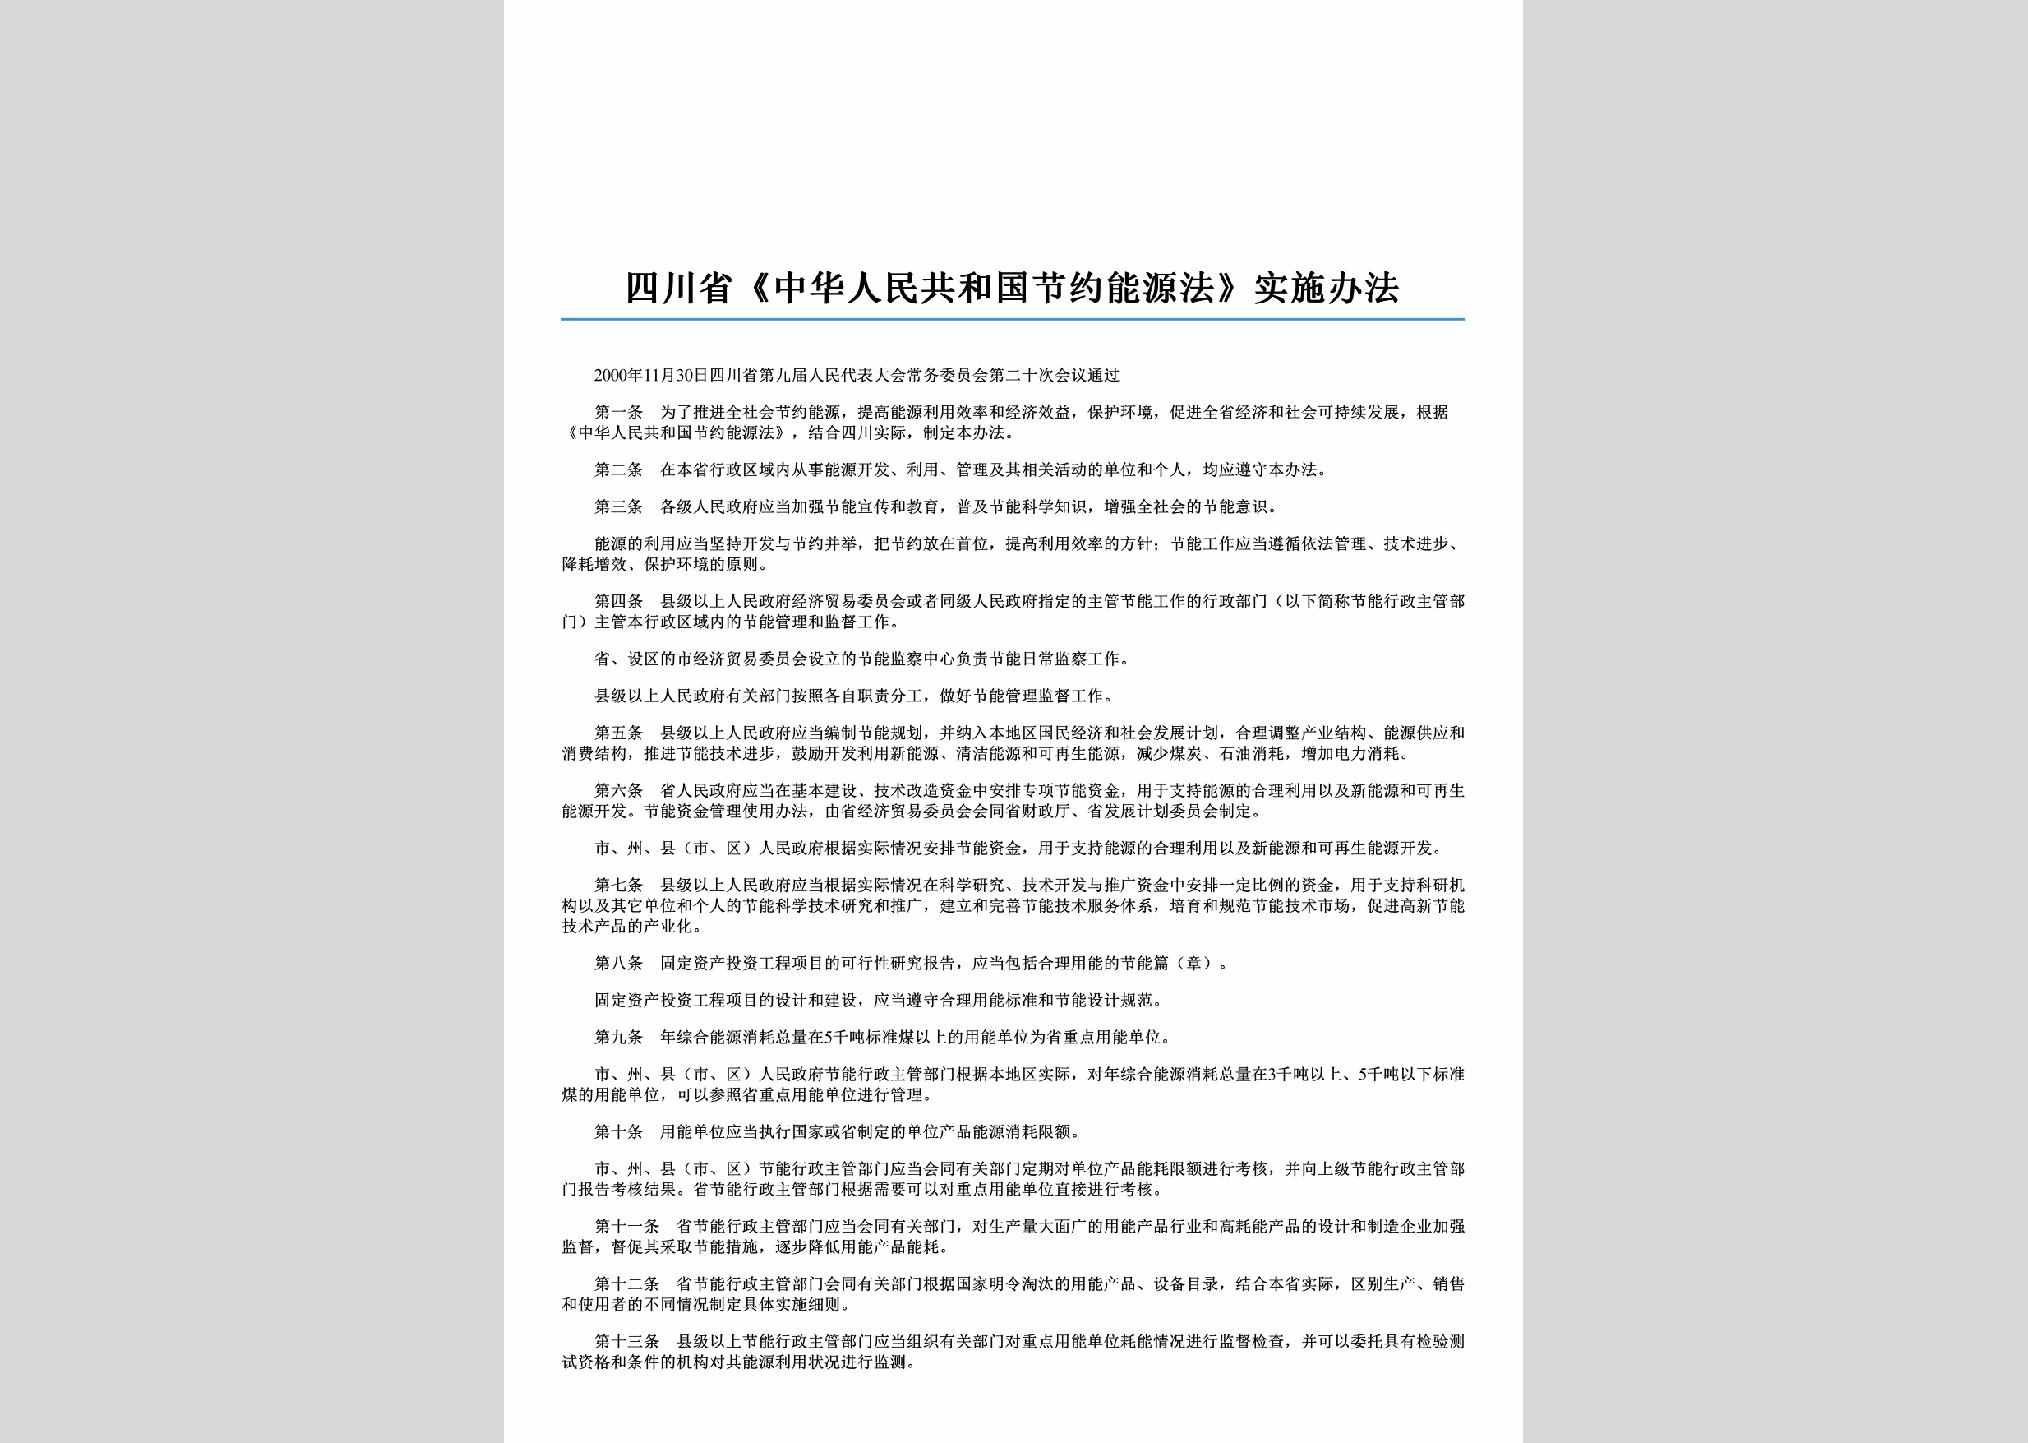 SC-JYNYSSBF-2001：四川省《中华人民共和国节约能源法》实施办法